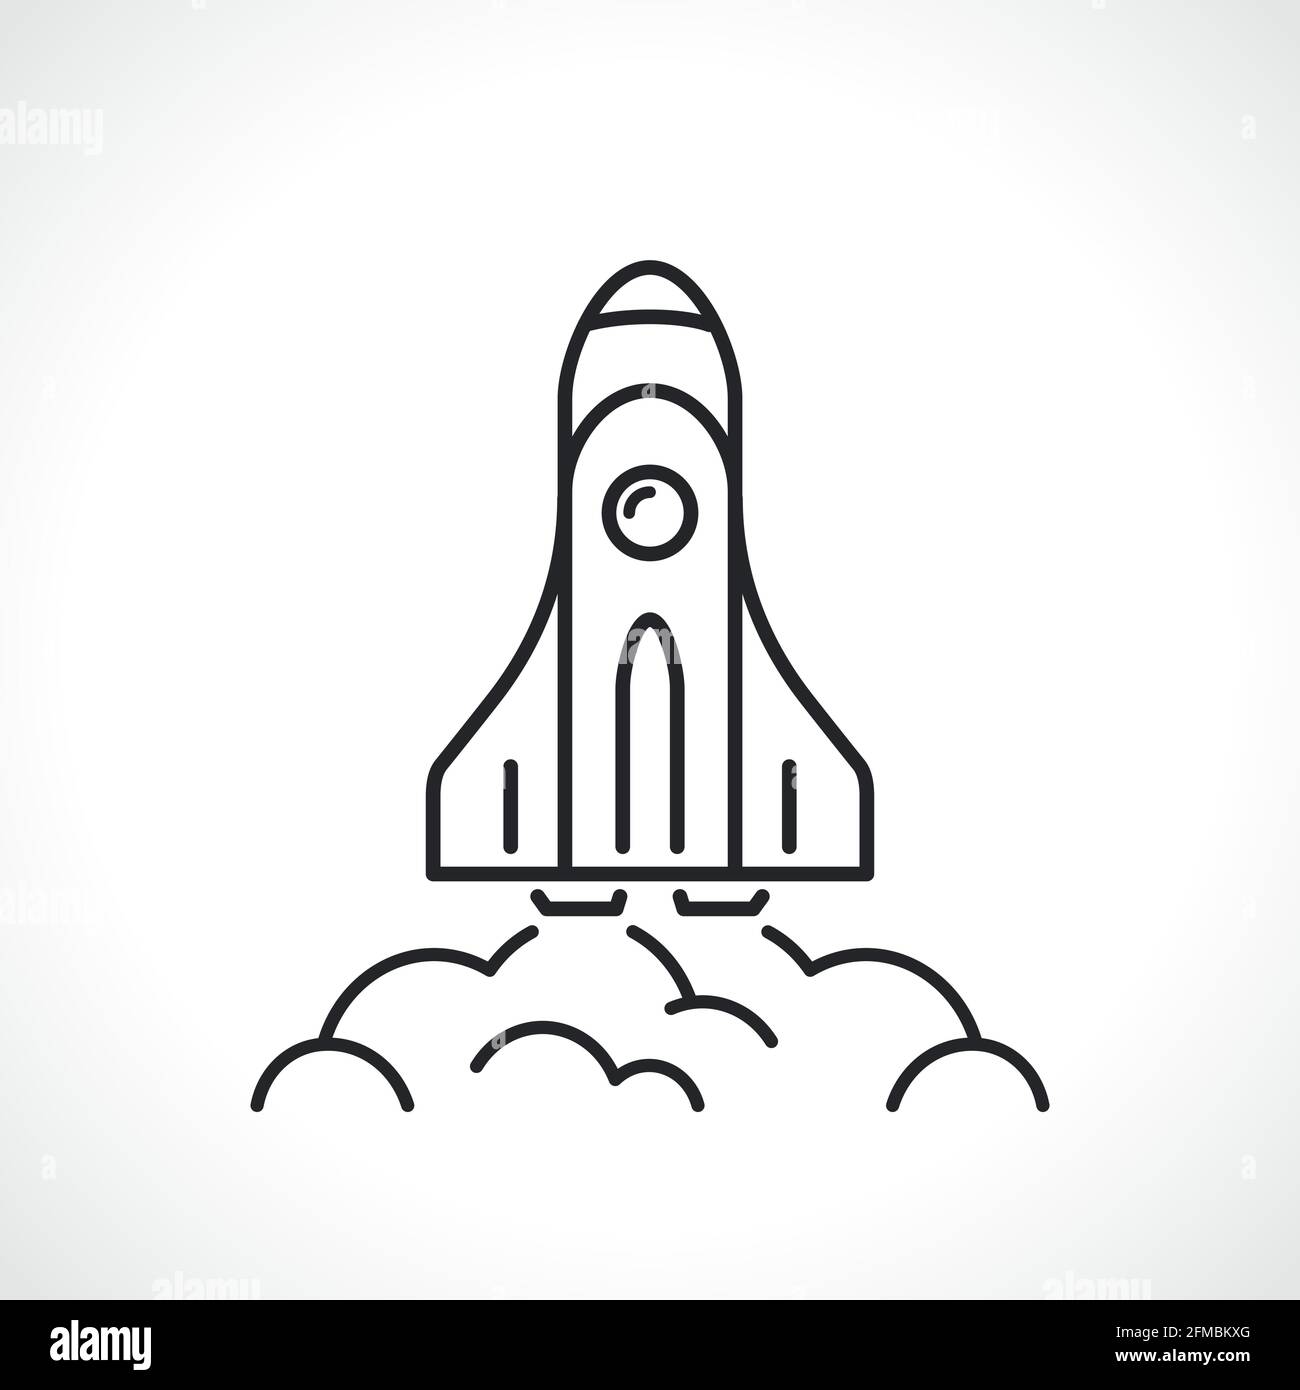 Raketenliniensymbol Vektor-Symbol isoliertes Design Stock Vektor